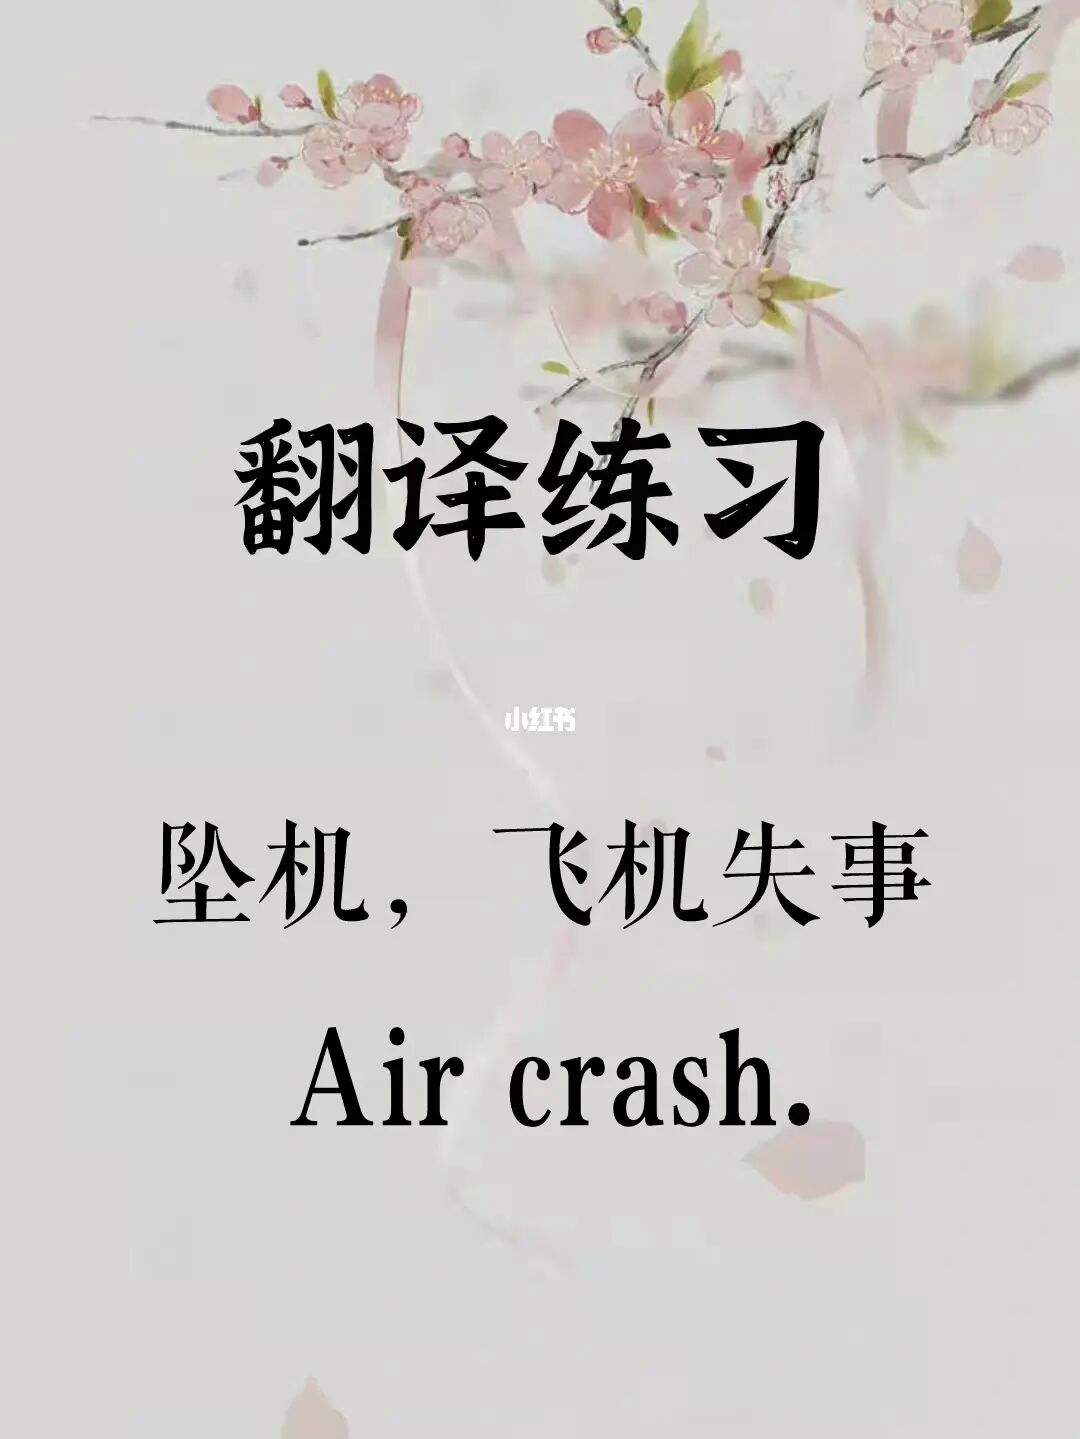 飞机软件怎么翻译成中文-飞机软件怎么翻译成中文的